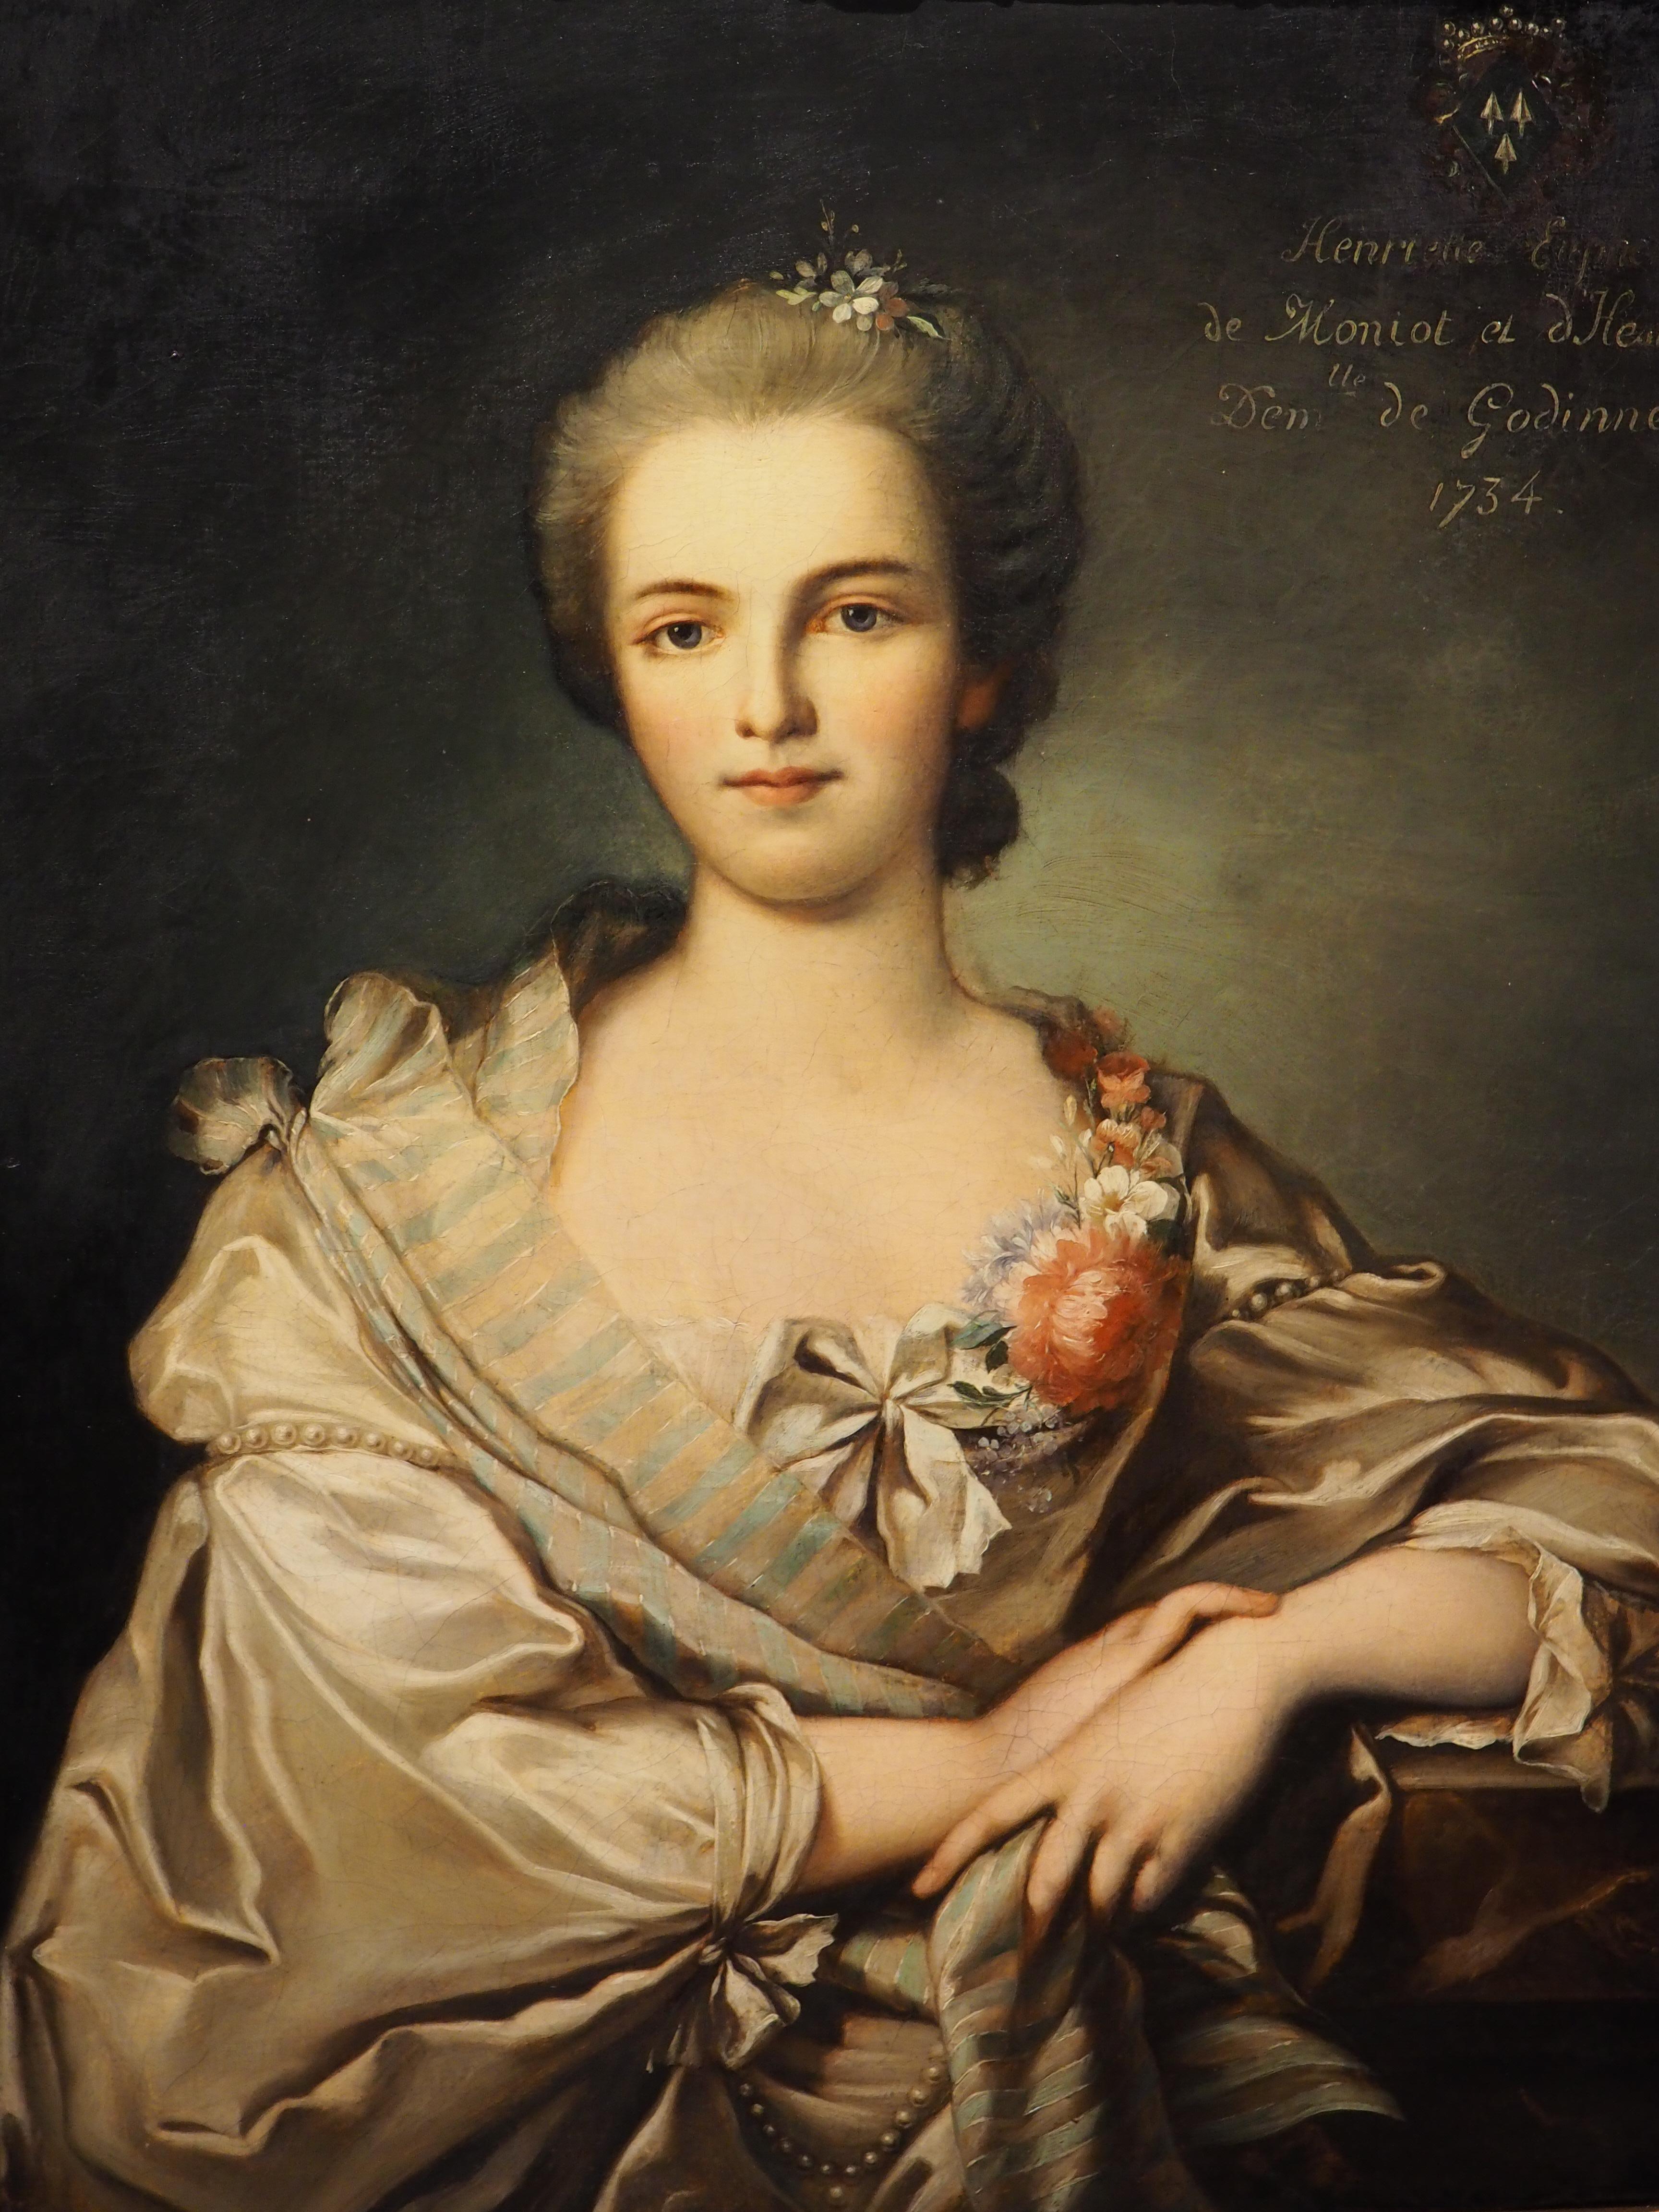 Gilt Oil on Canvas Portrait of Henriette Euphemie de Moniot by Robert Tourniers, 1734